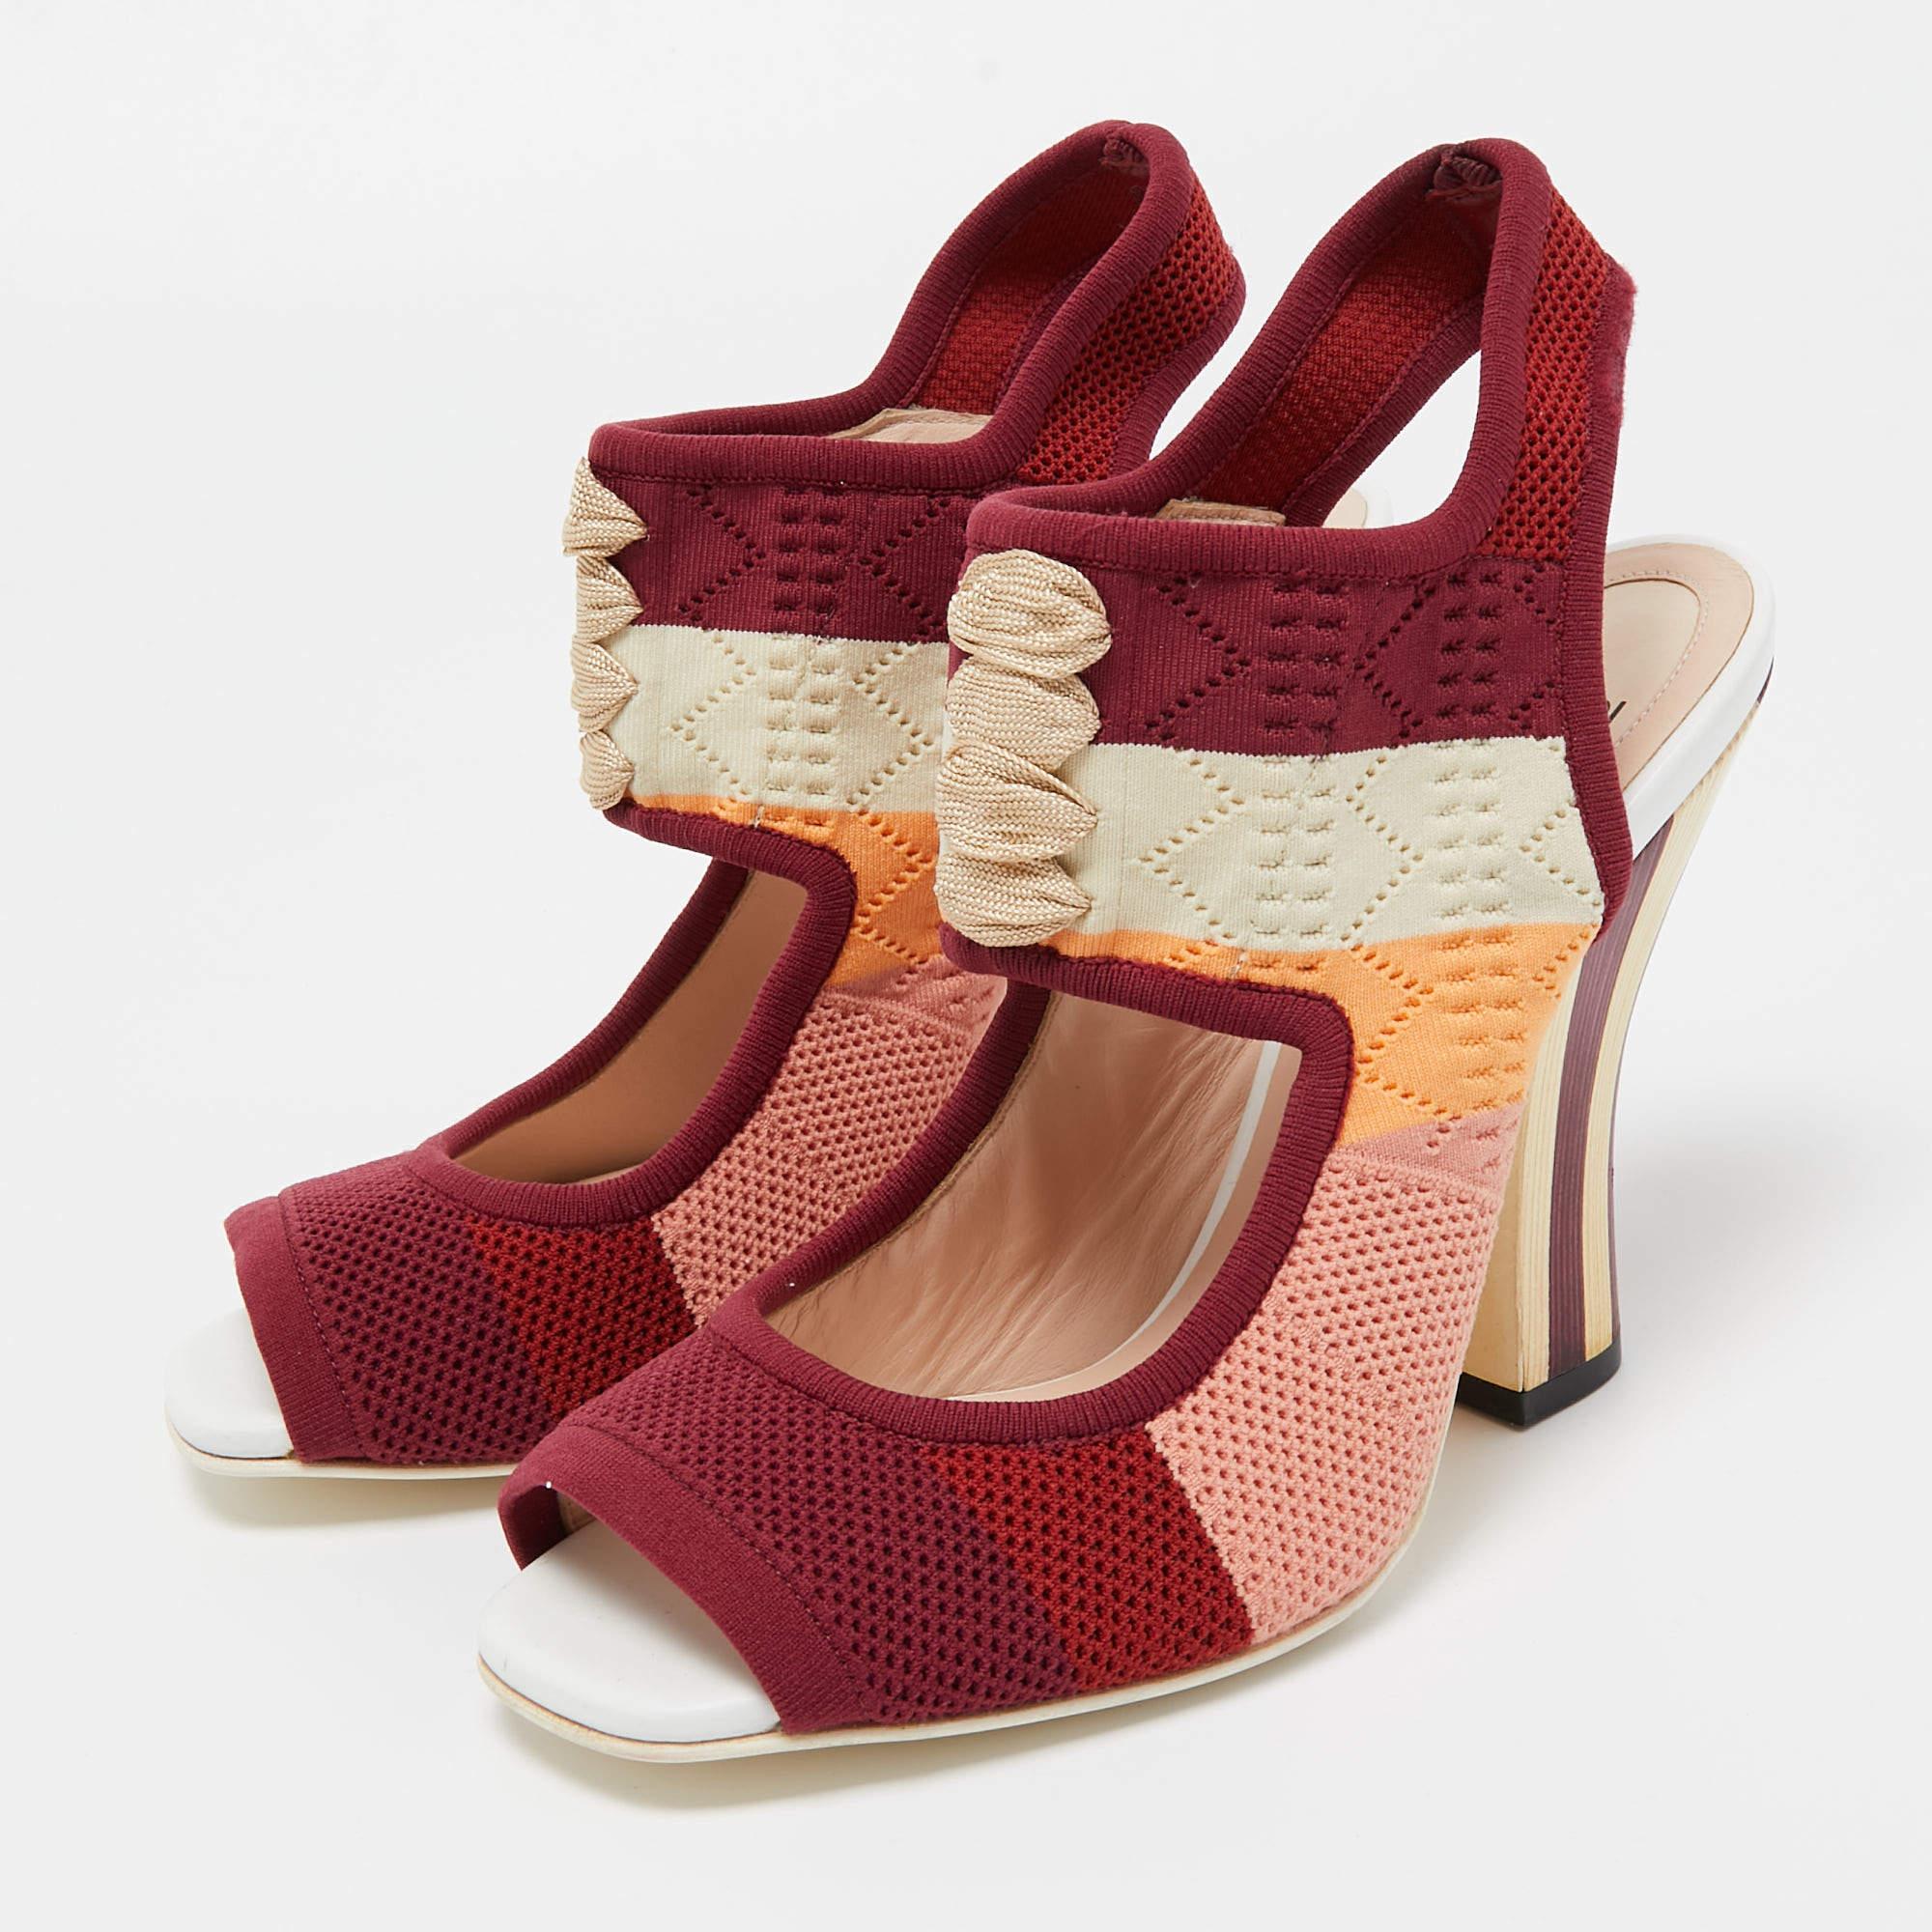 Fendi Multicolor Knit Fabric Slingback Sandals Size 38.5 In Good Condition For Sale In Dubai, Al Qouz 2